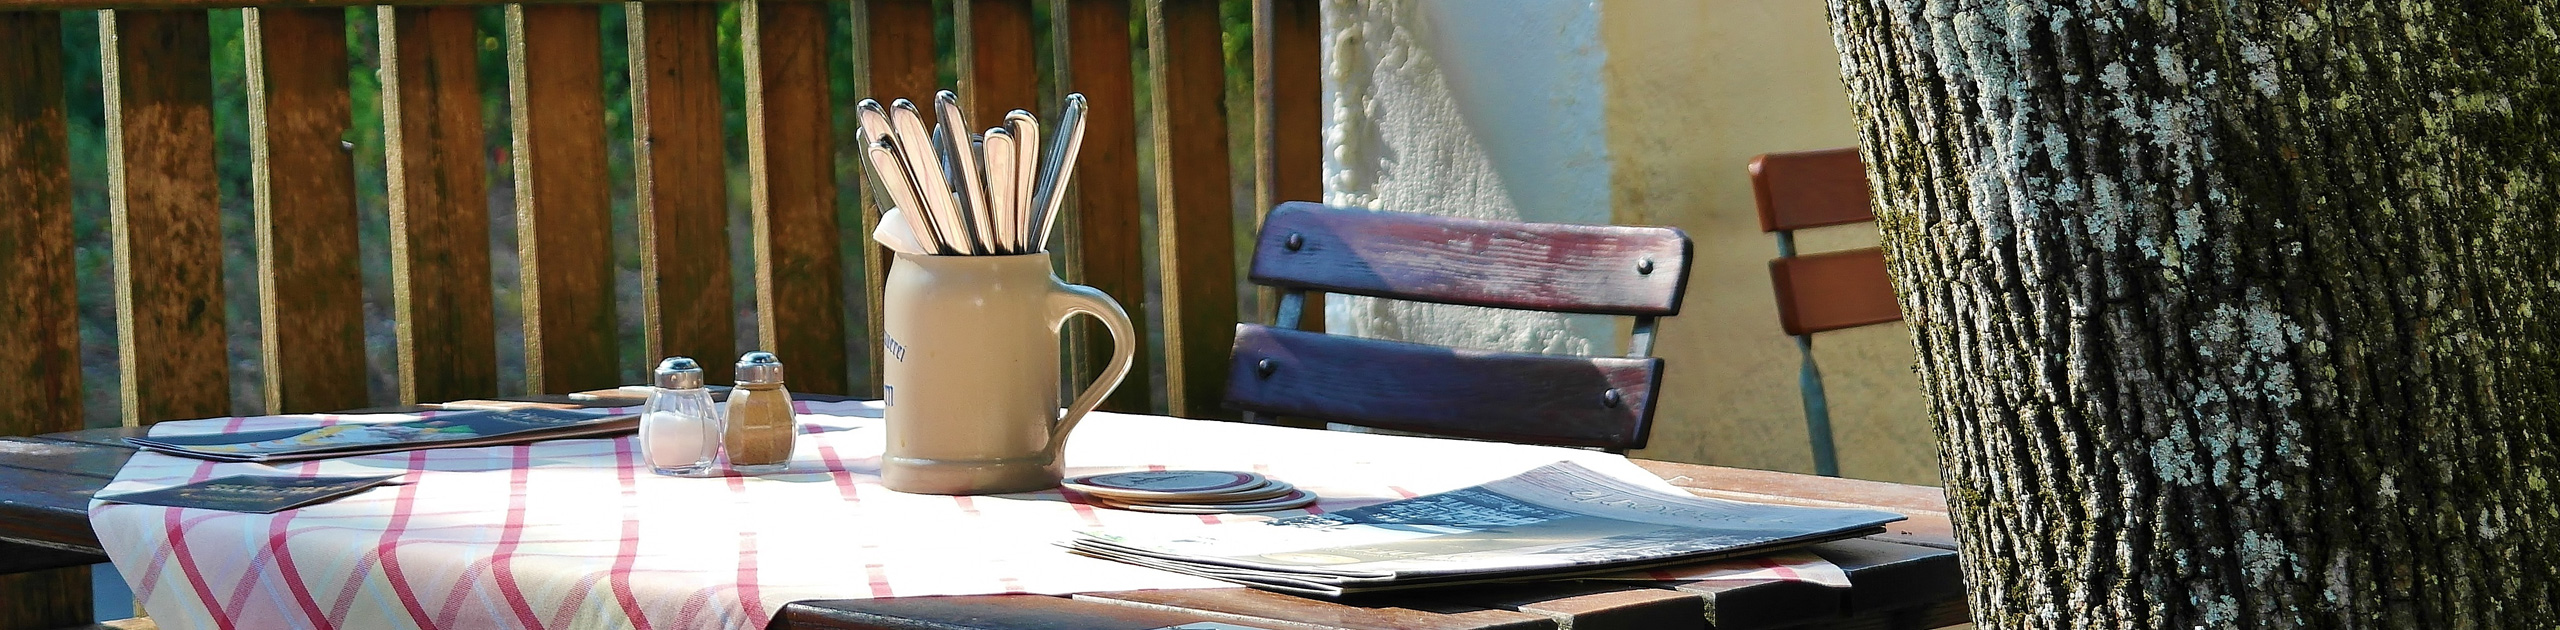 Tisch im Freien mit Bierkrug, Besteck und Zeitung